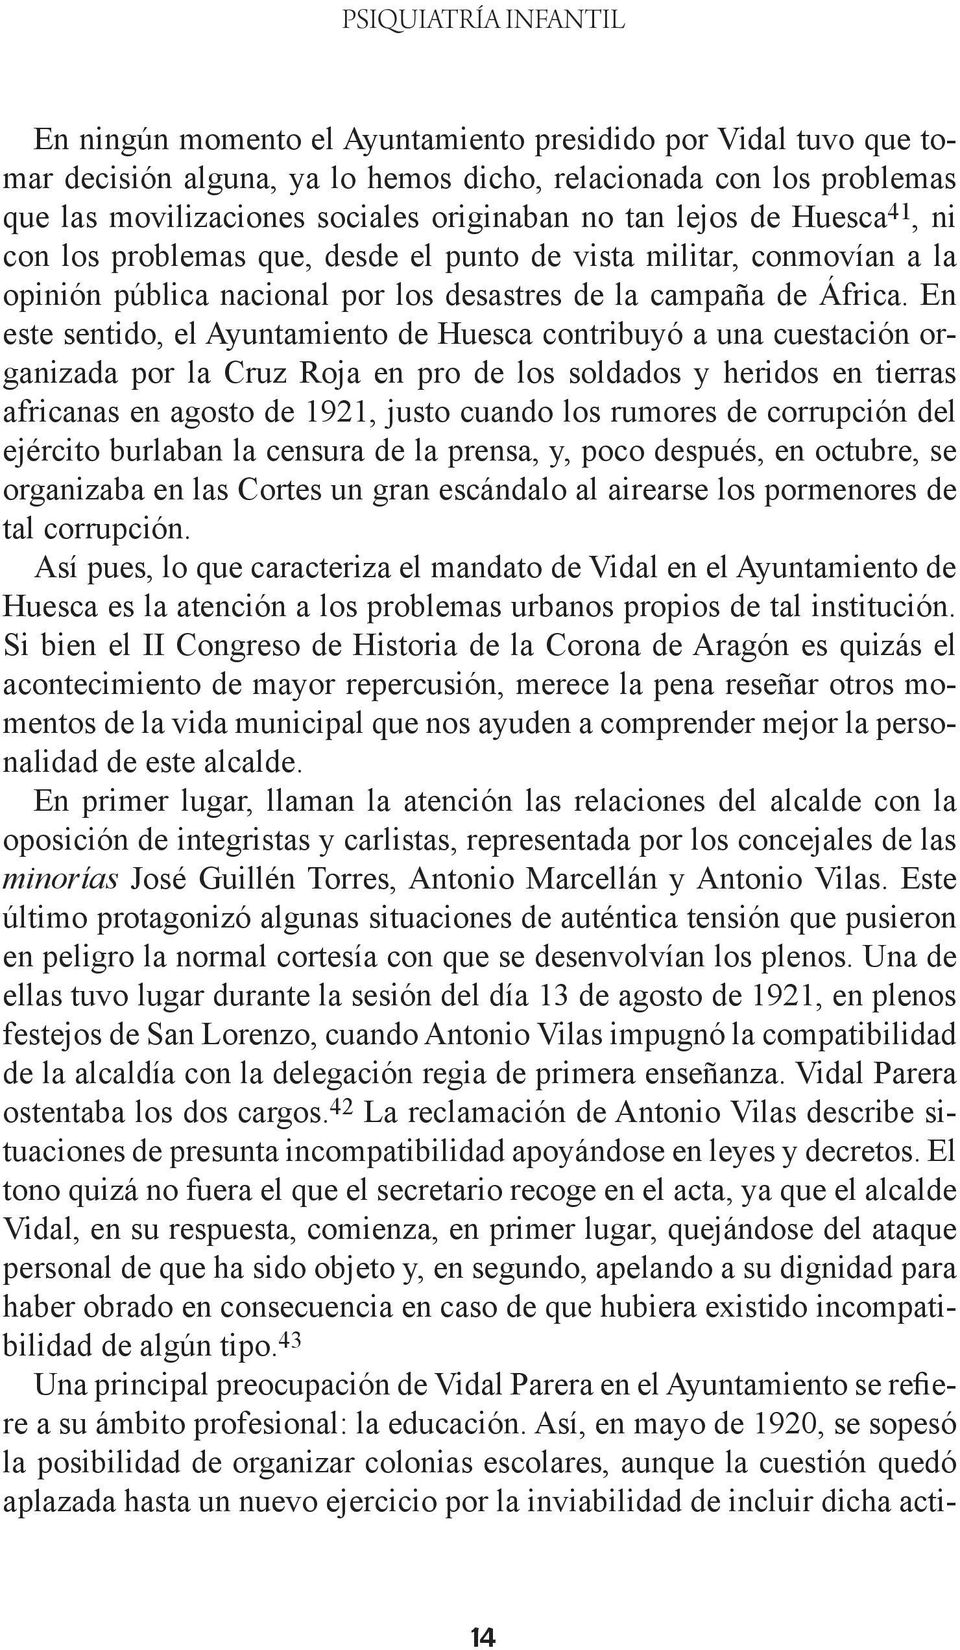 En este sentido, el Ayuntamiento de Huesca contribuyó a una cuestación organizada por la Cruz Roja en pro de los soldados y heridos en tierras africanas en agosto de 1921, justo cuando los rumores de